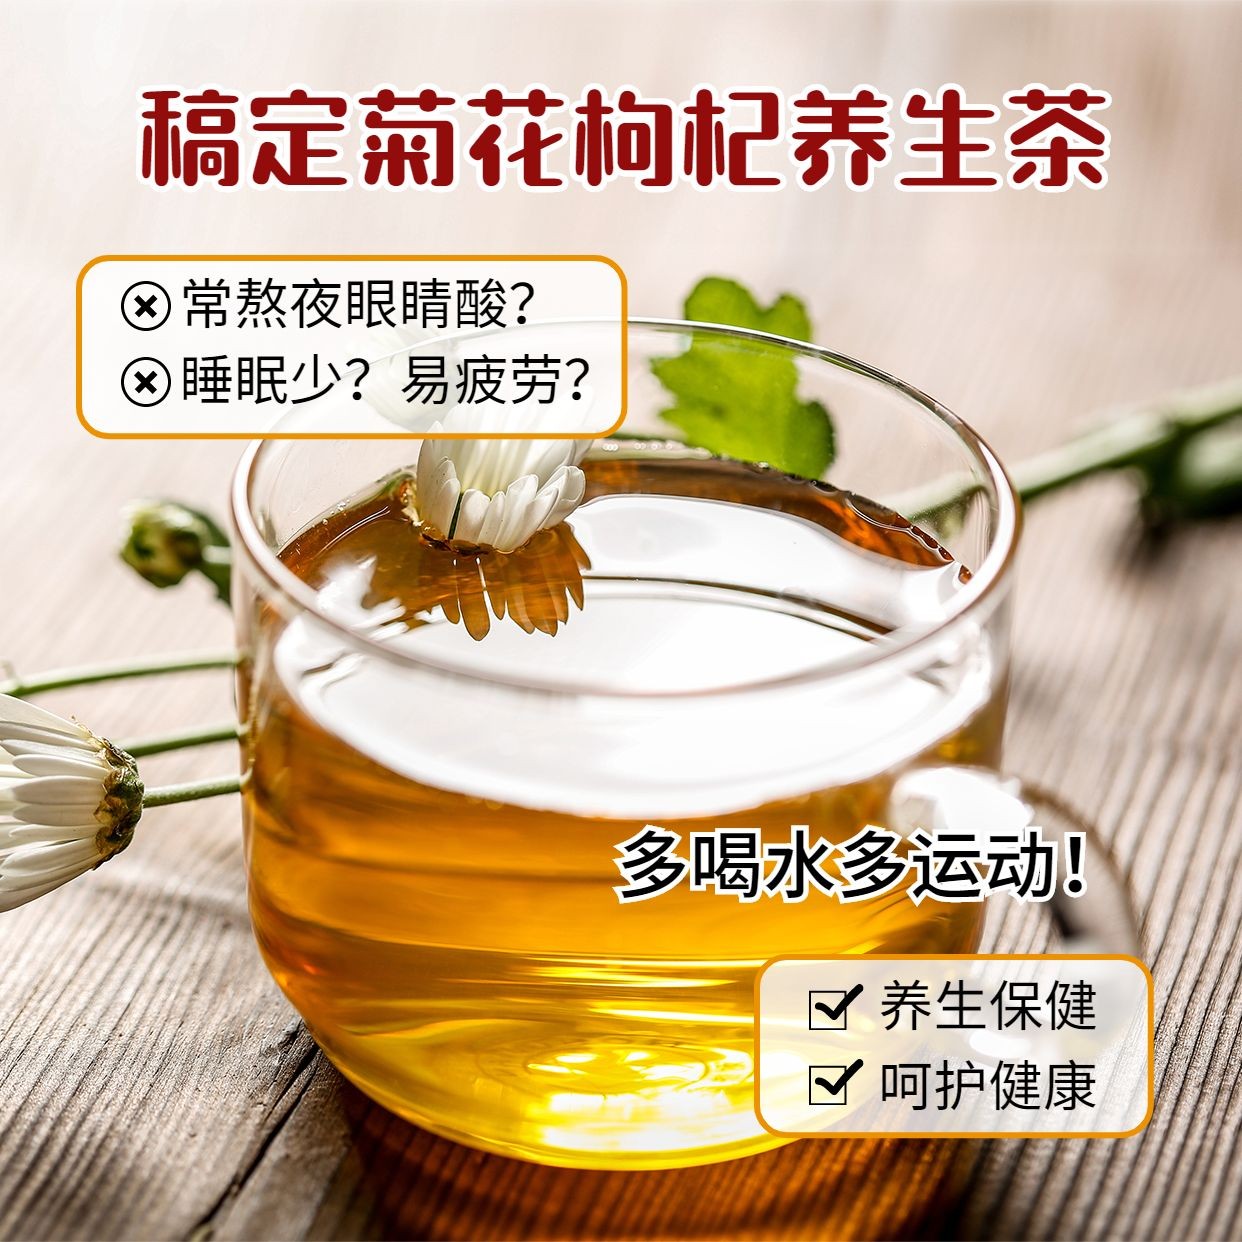 养生保健产品展示枸杞茶